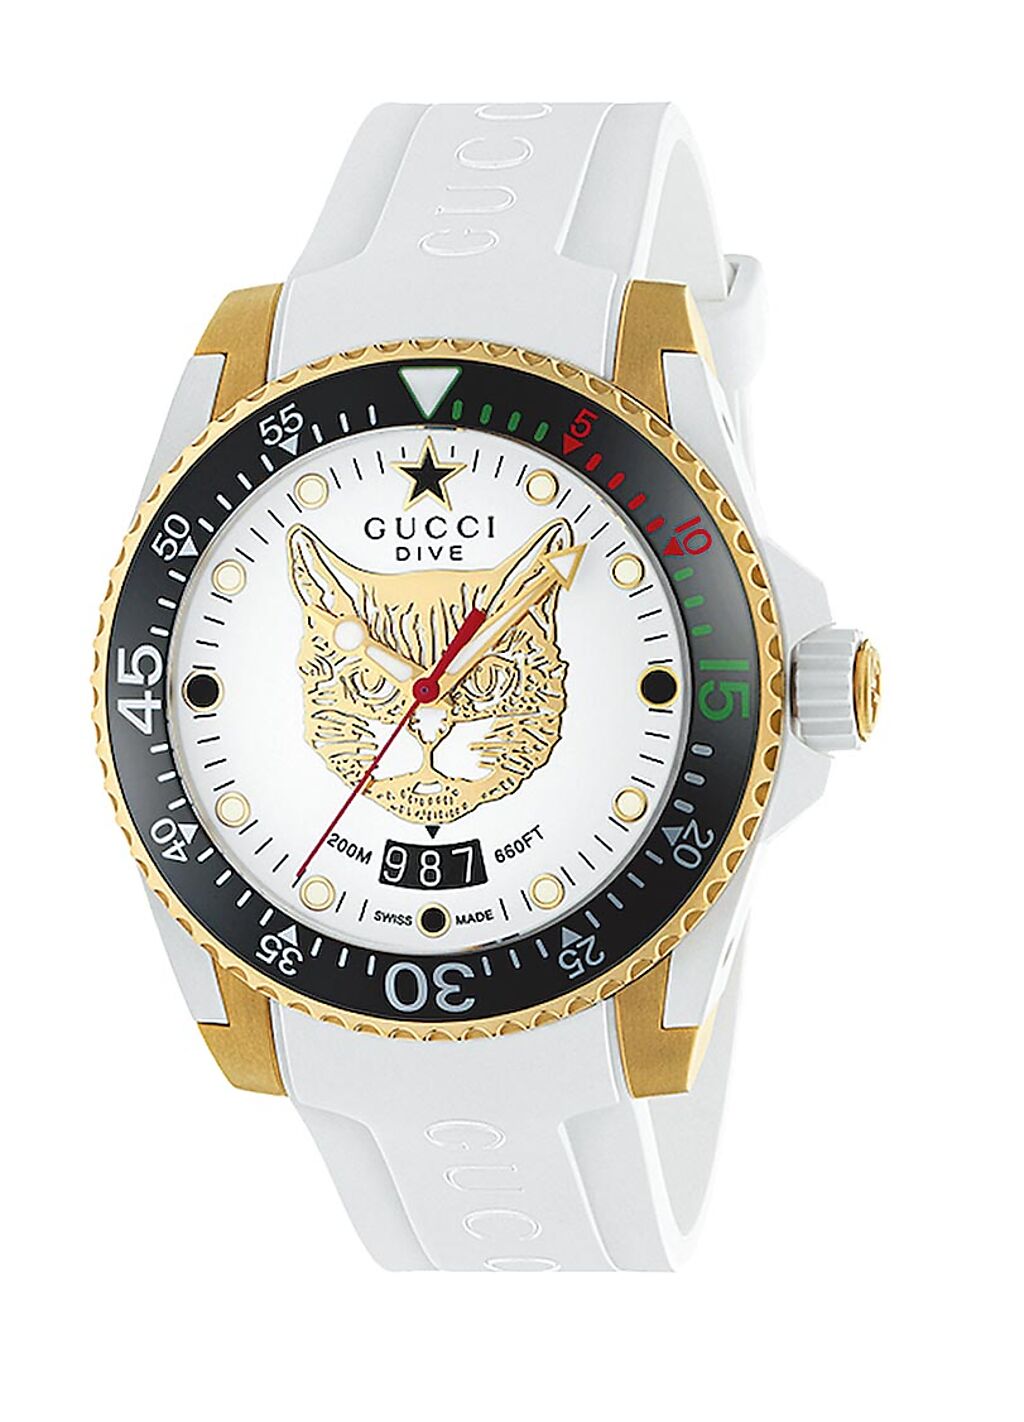 遠百信義A13 GUCCI Gucci Dive大碼40mm，白色表面飾以黃金色貓科動物圖案，白色橡膠表帶，5萬1000元。（遠百提供）